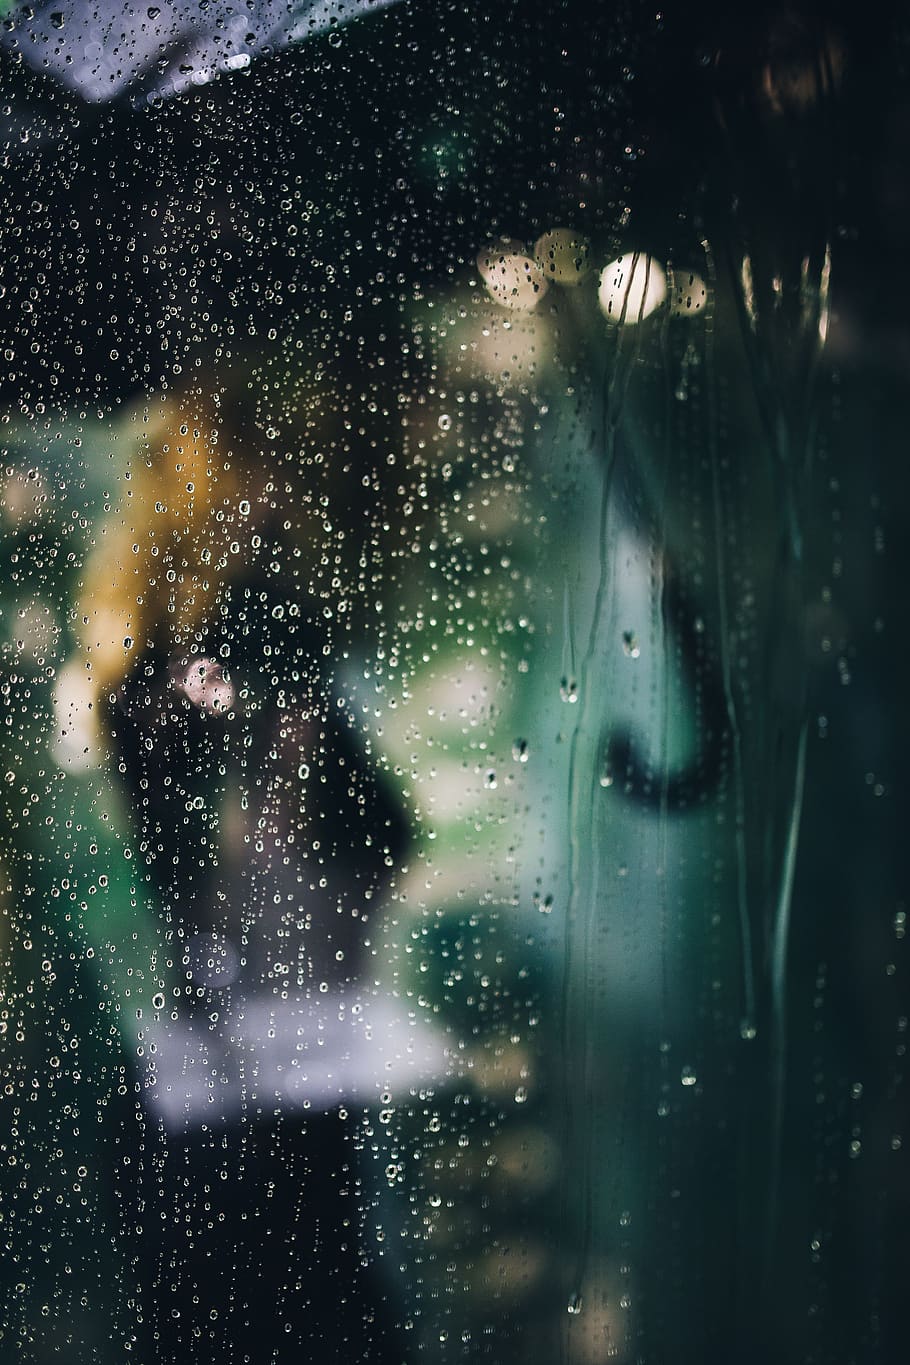 resumo, chuva, plano de fundo, vidro, janela, molhado, gota de chuva, gotas, gota d'água, aqua